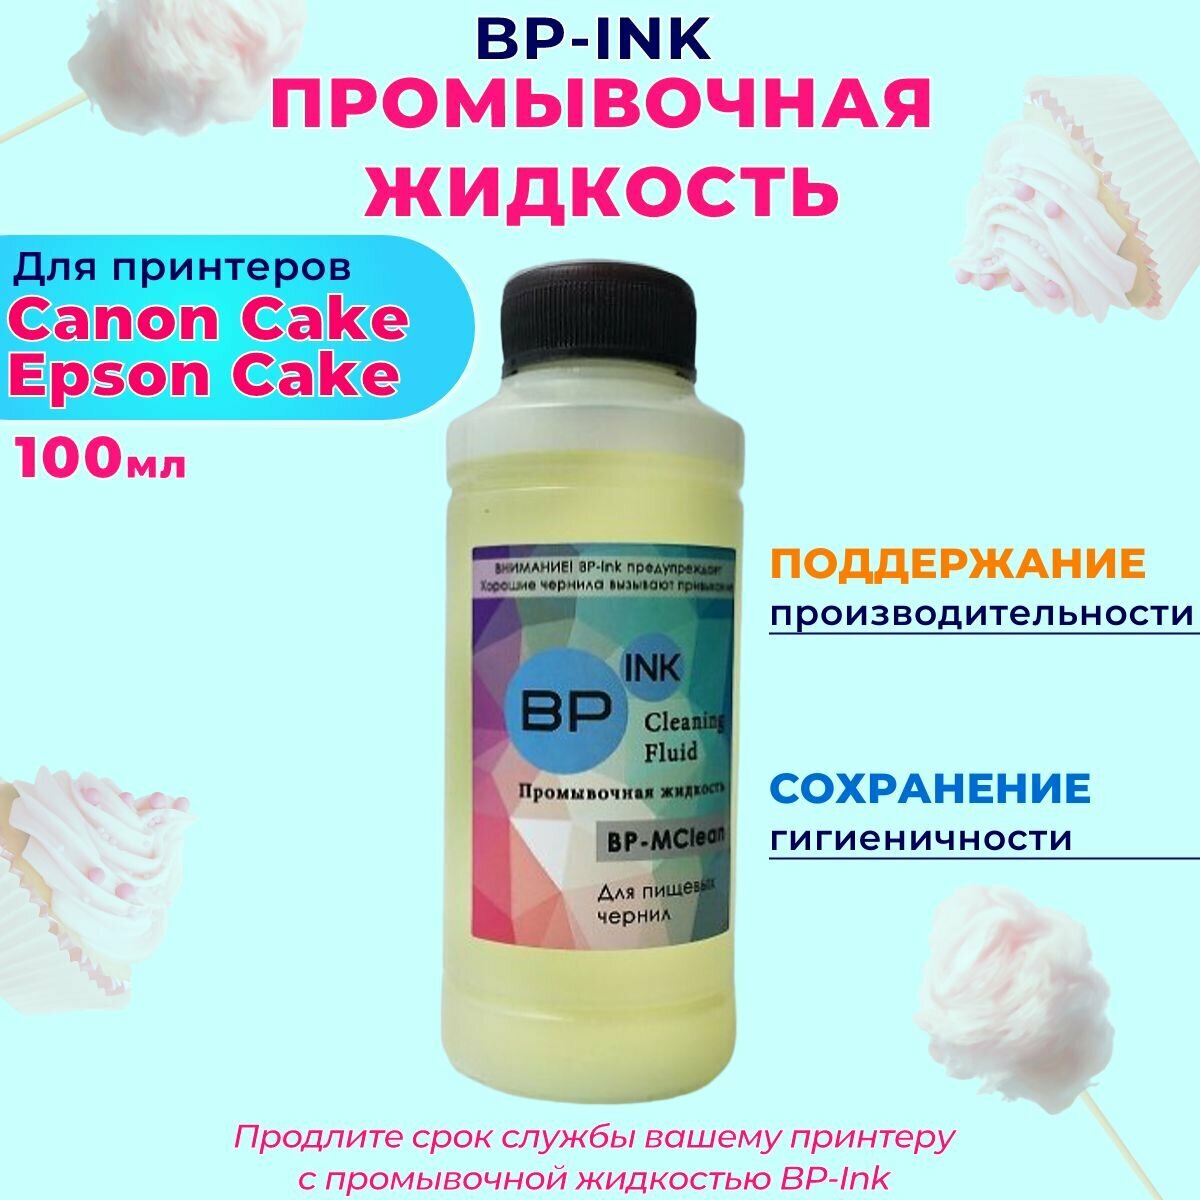 Промывочная жидкость для пищевых съедобных чернил 100гр. BP-INK